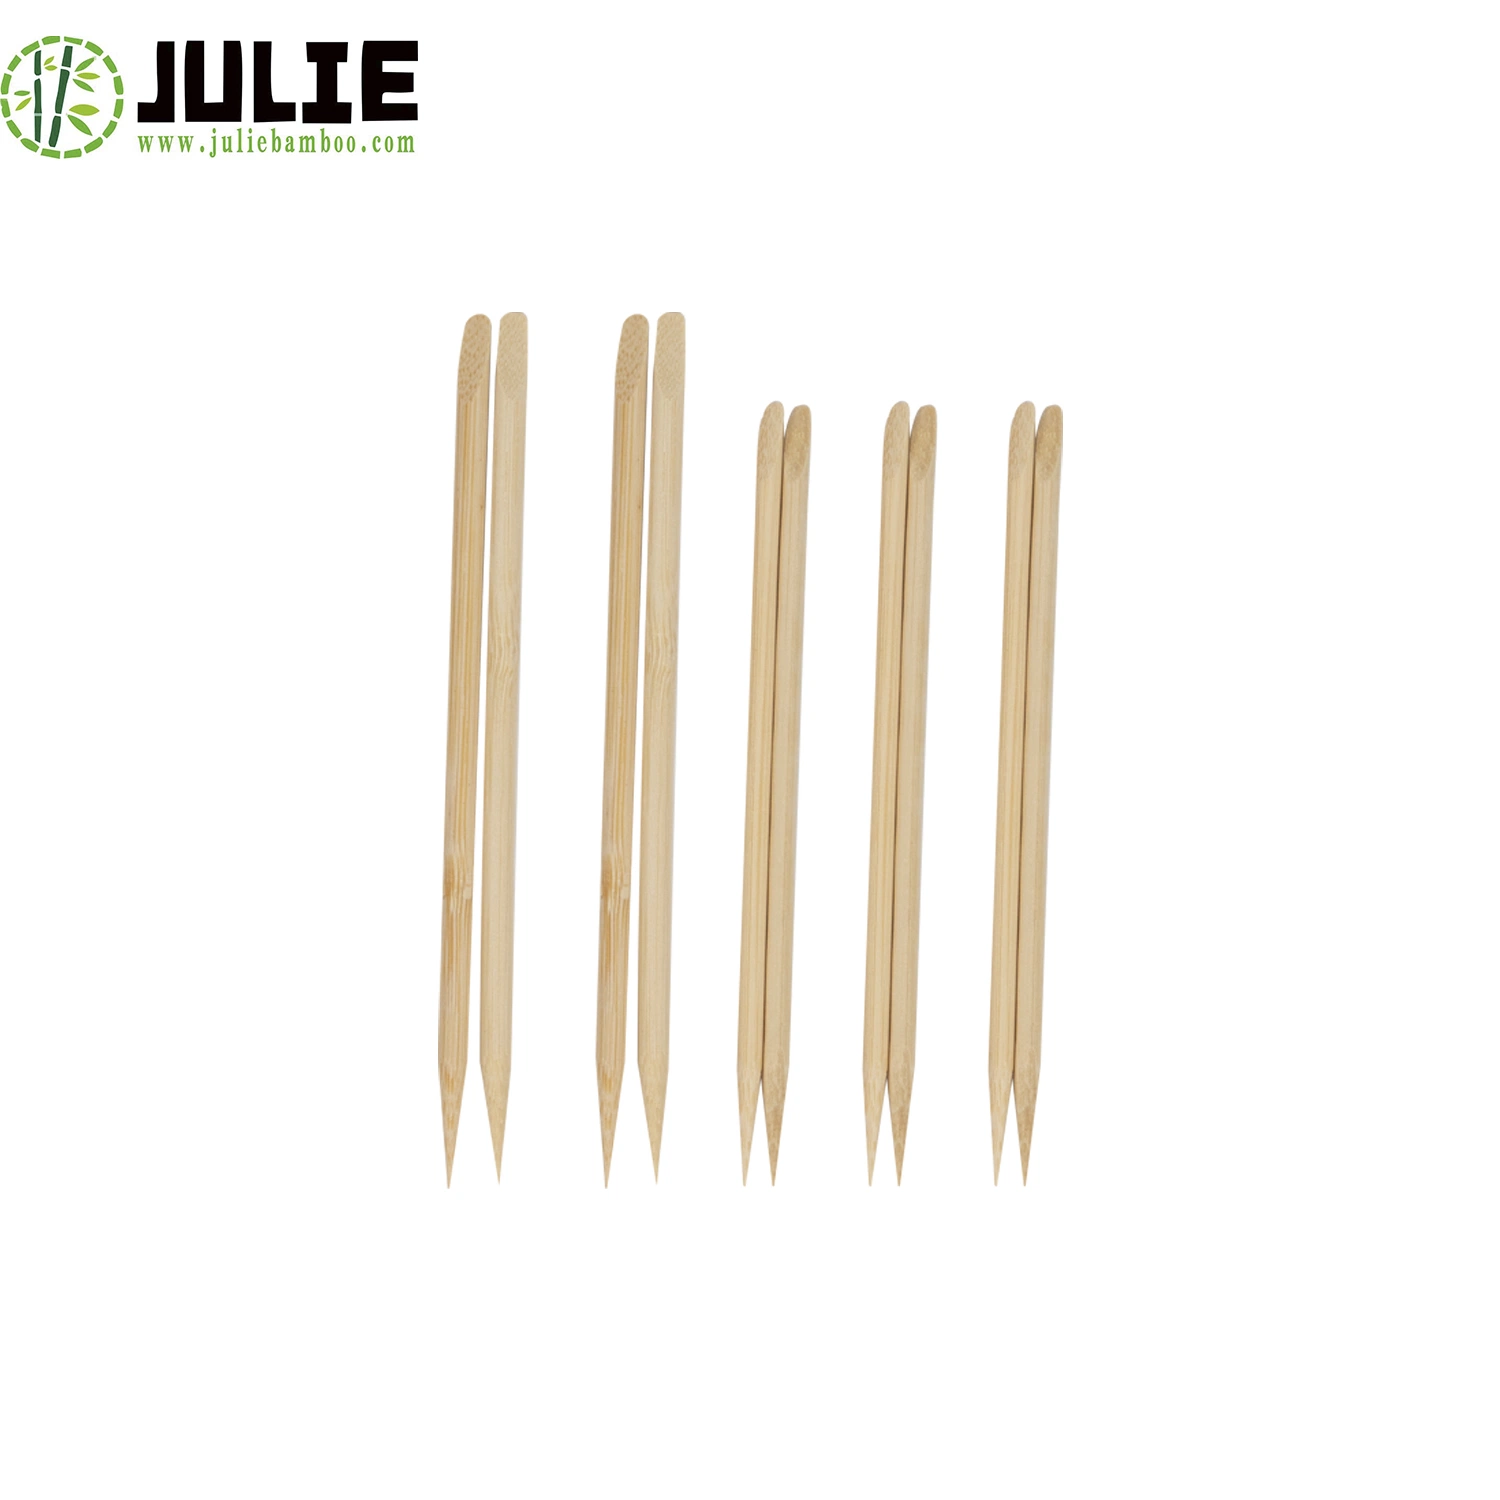 Bâtonnets de bambou de haute qualité respectueux de l'environnement, biodégradables, naturels et sains pour le contact alimentaire.